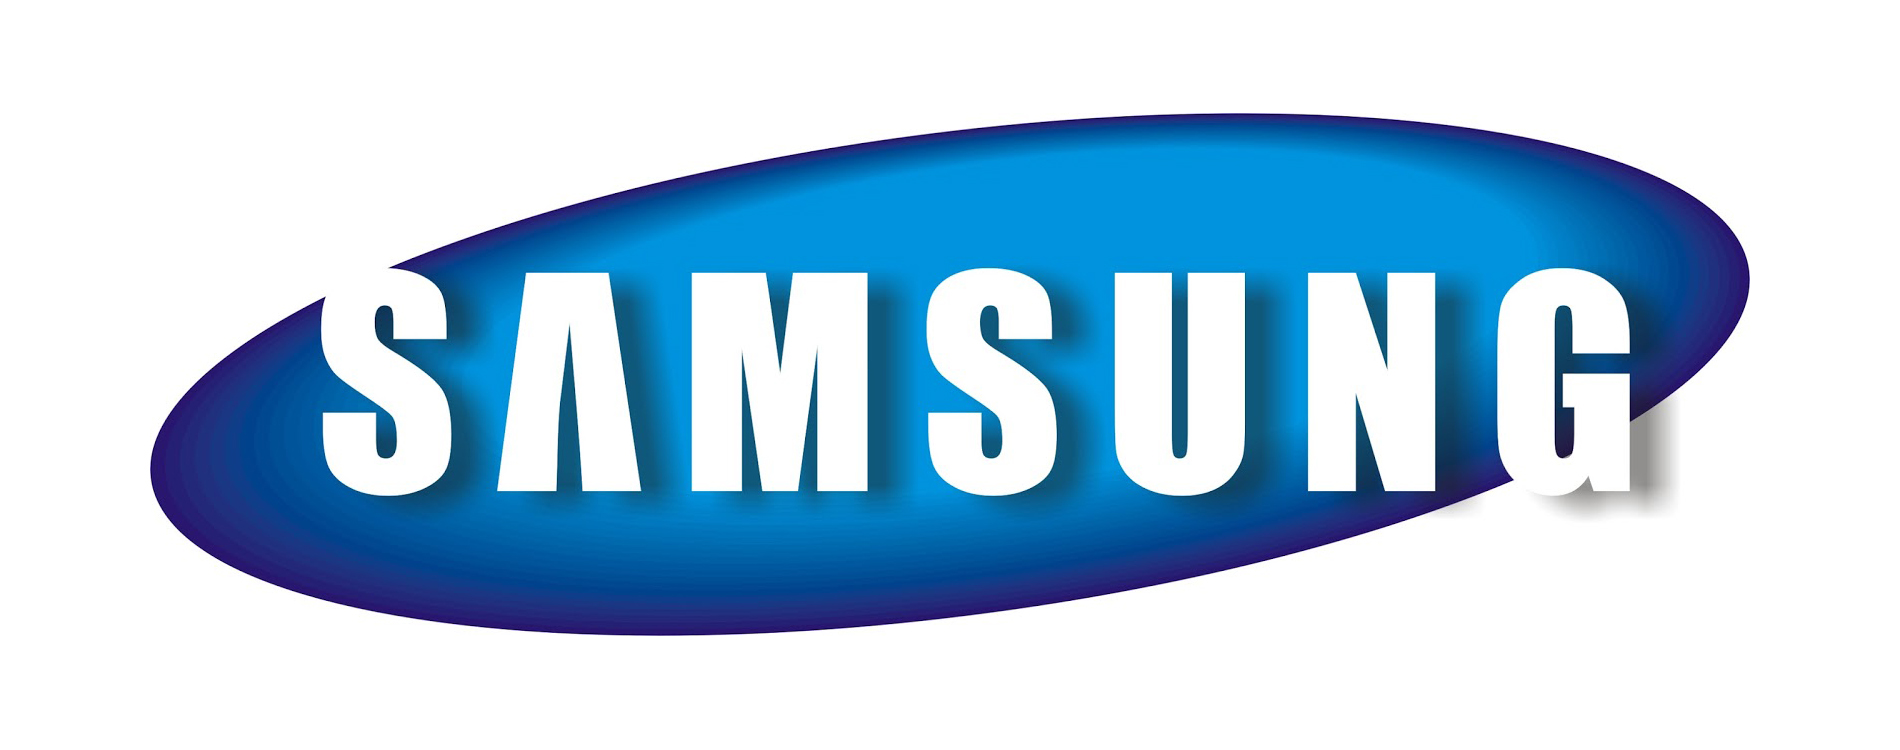 Samsung zamyka jeden ze swoich dziaw. Masowe zwolnienia